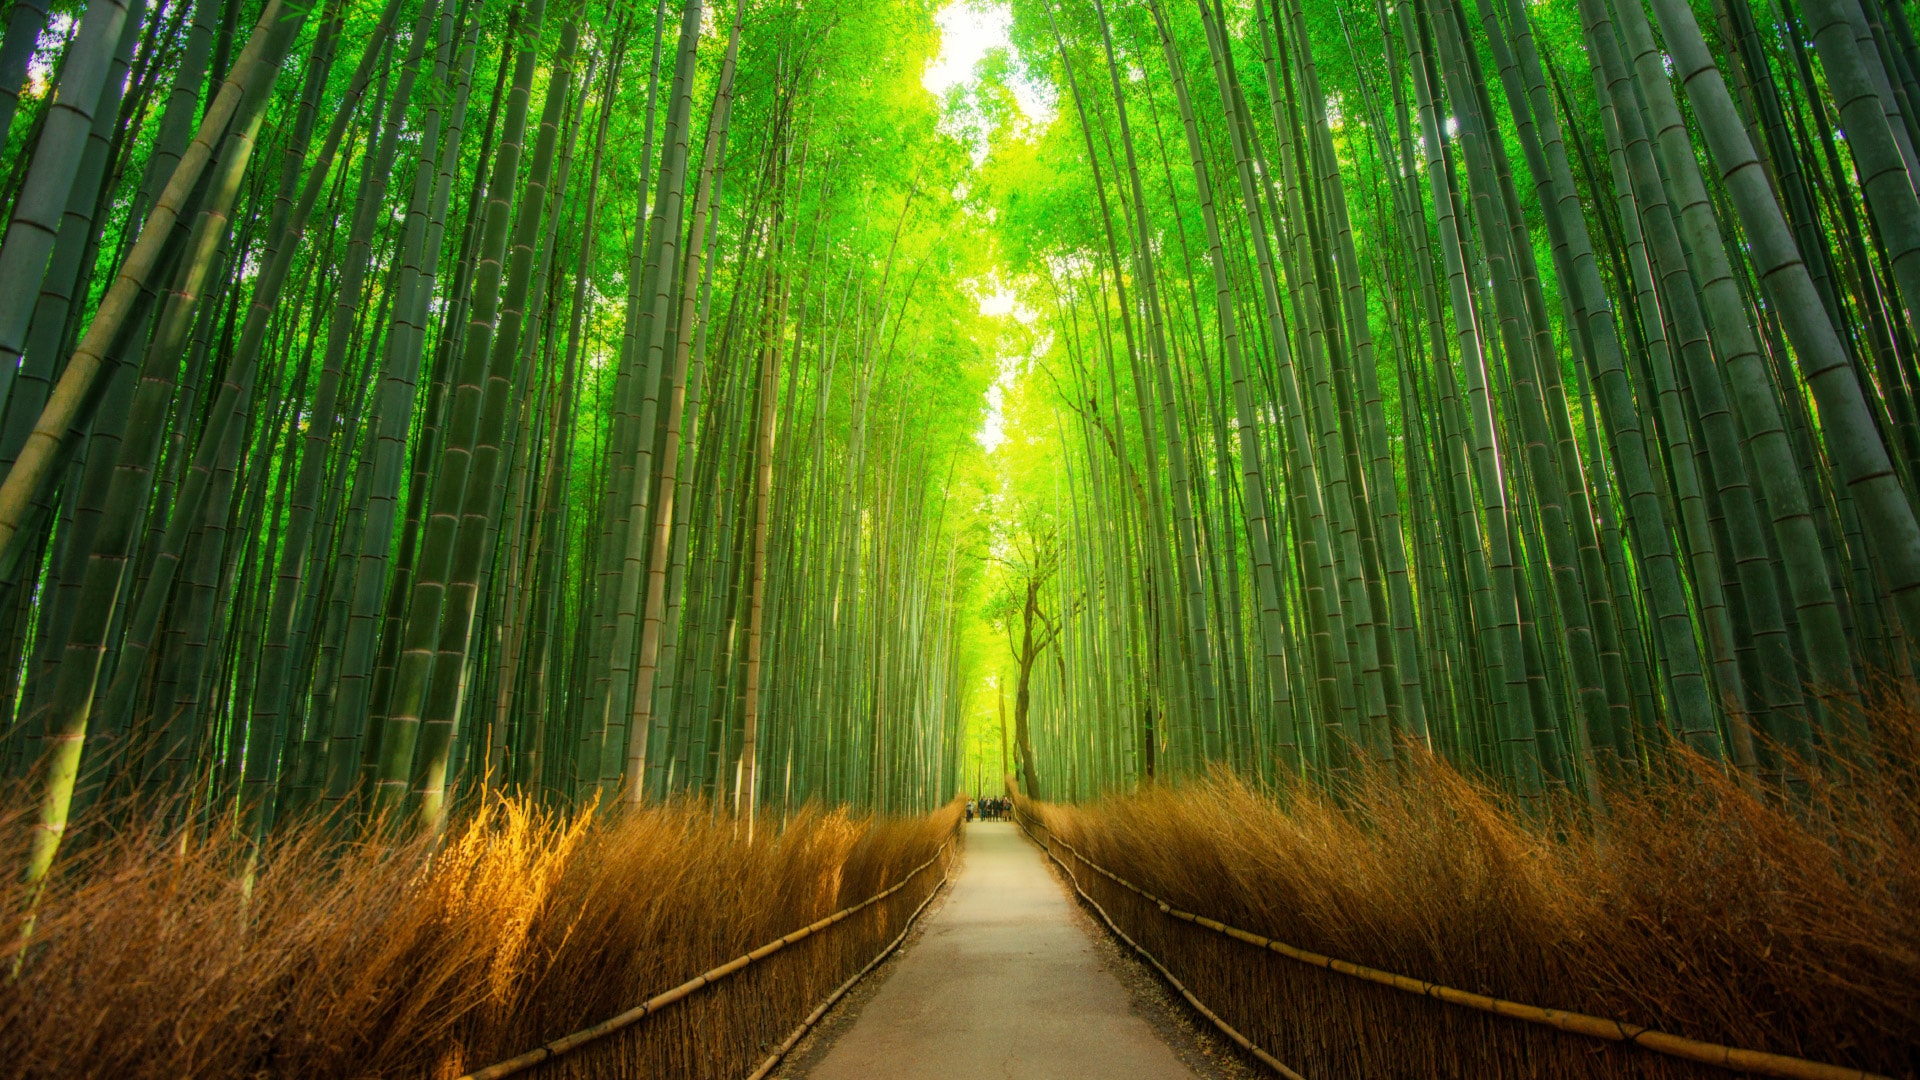 阳光洒进竹林间的小路绿色护眼主题风景壁纸